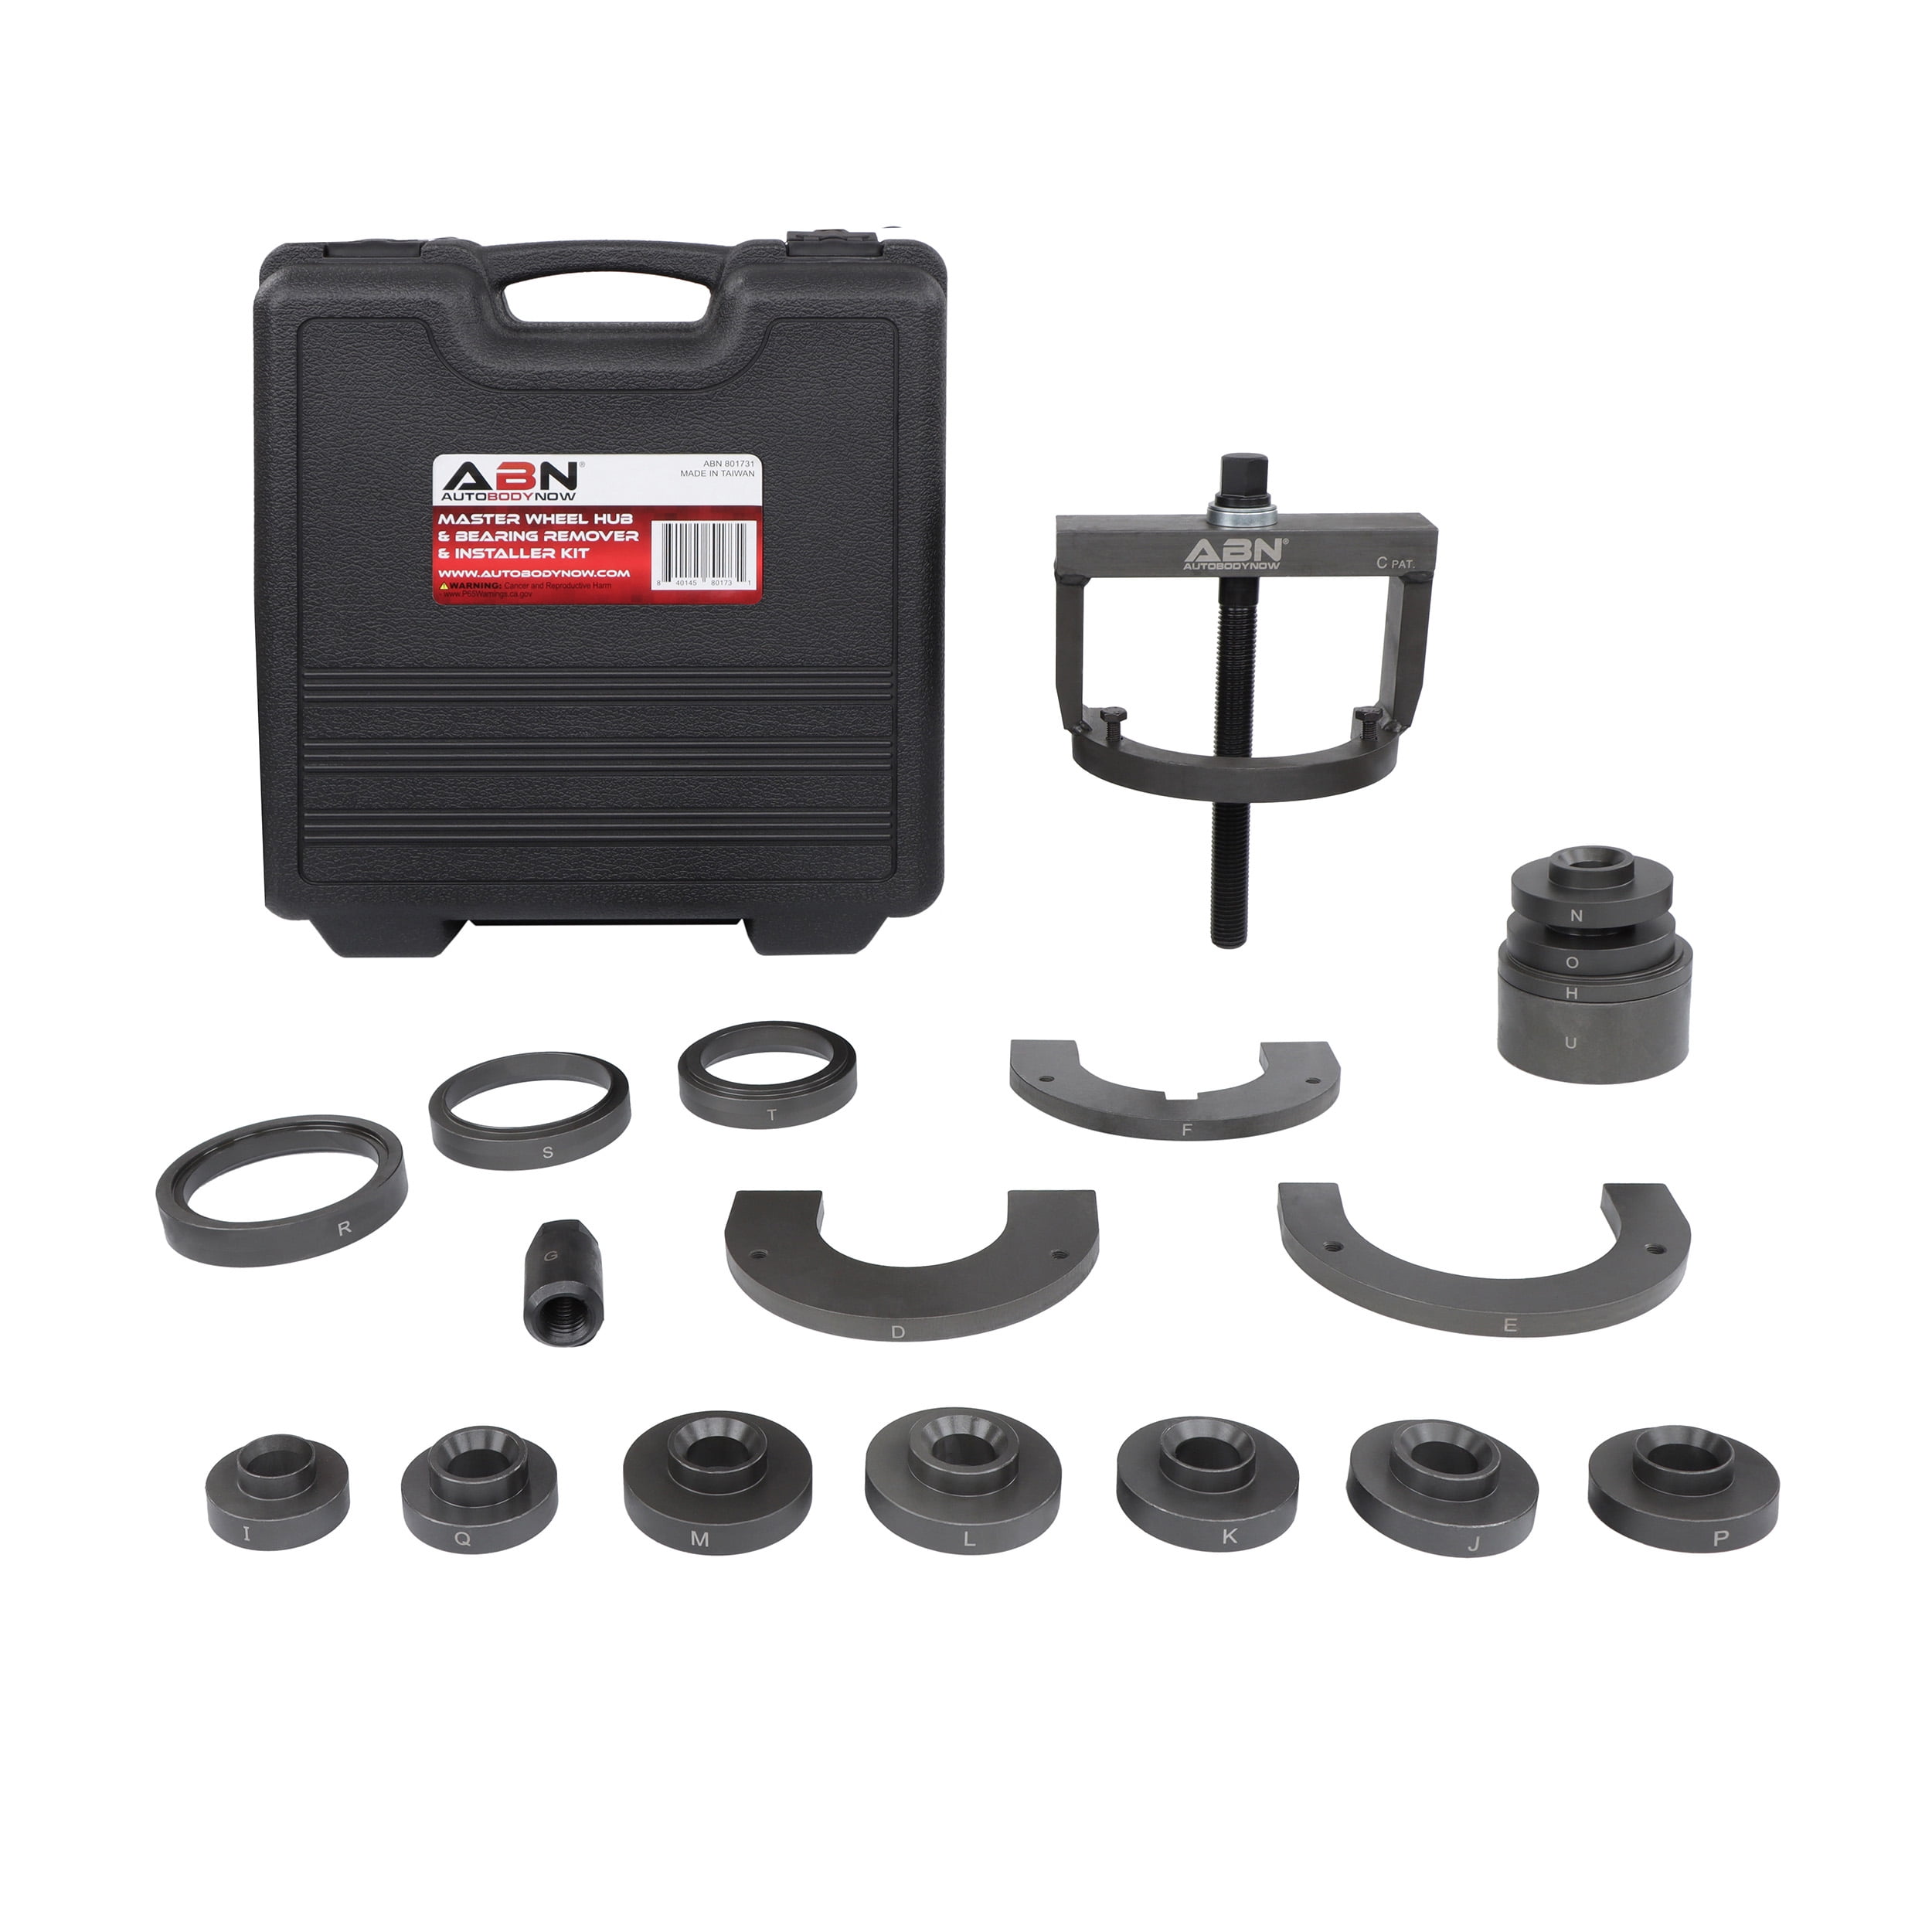 Buy Wheel bearing tool master set Universal, 32 pcs online